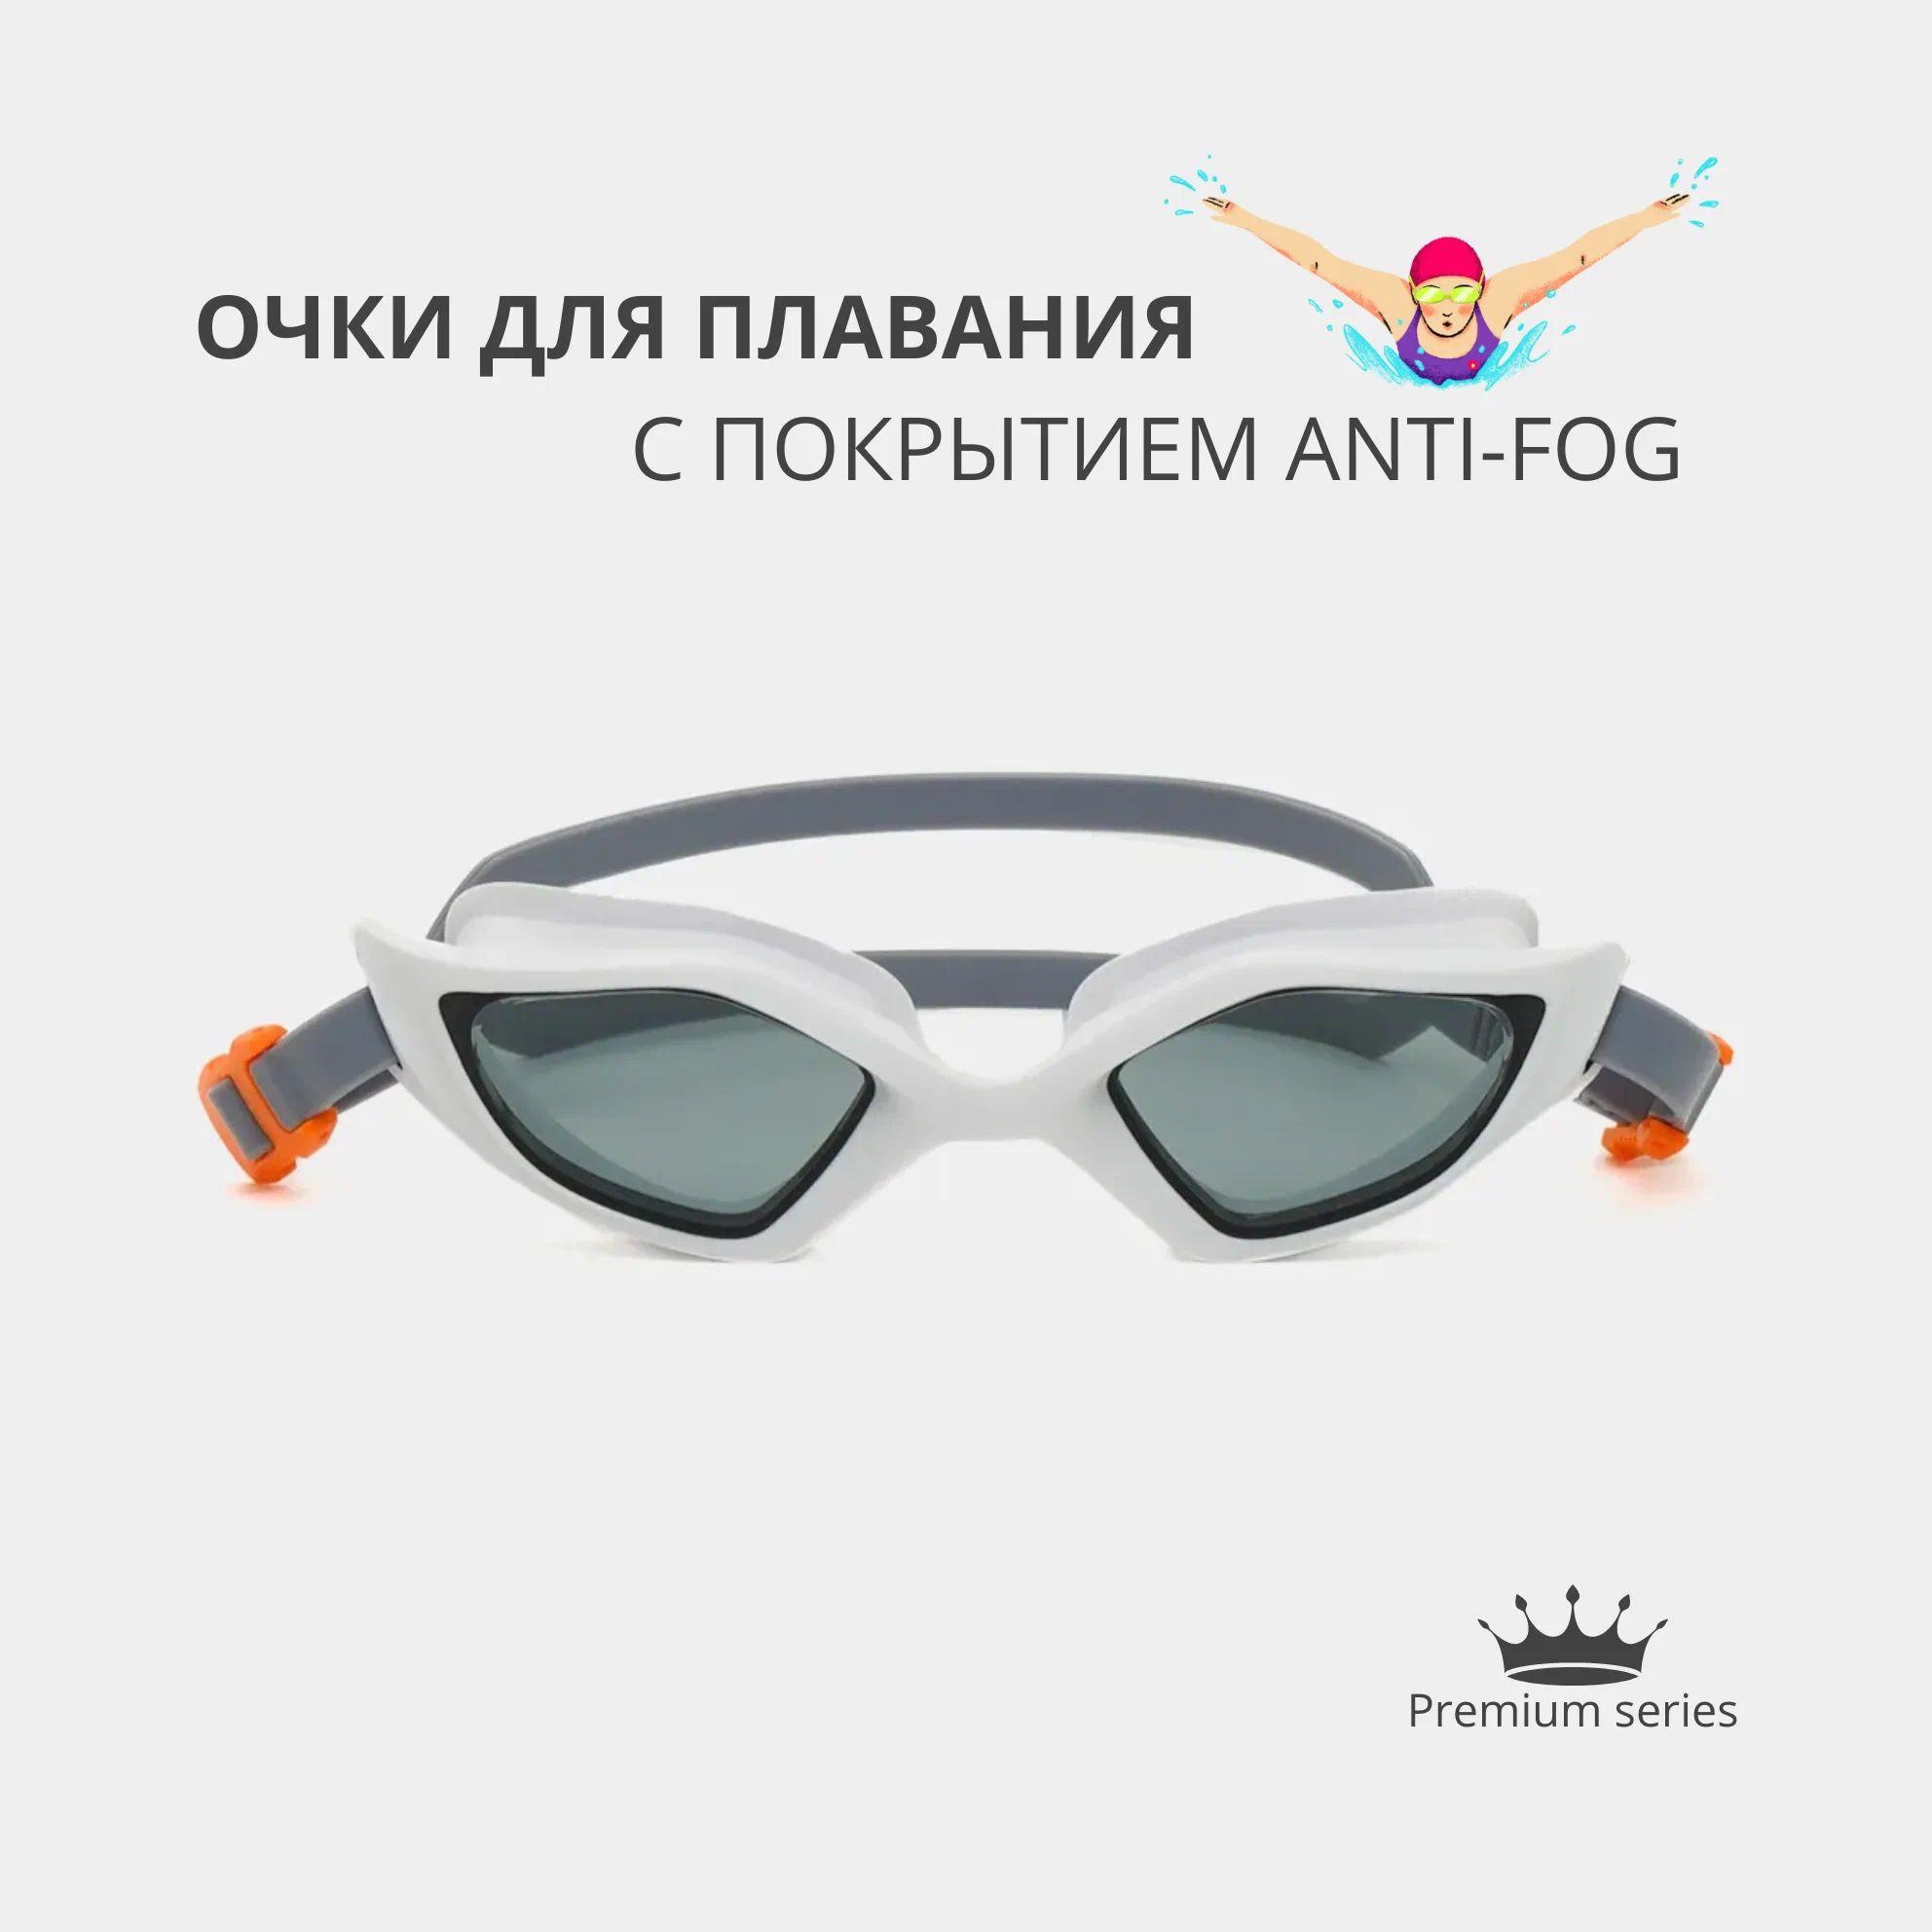 Профессиональные спортивные очки для плавания и бассейна, с покрытием Антифог и футляром в комплекте